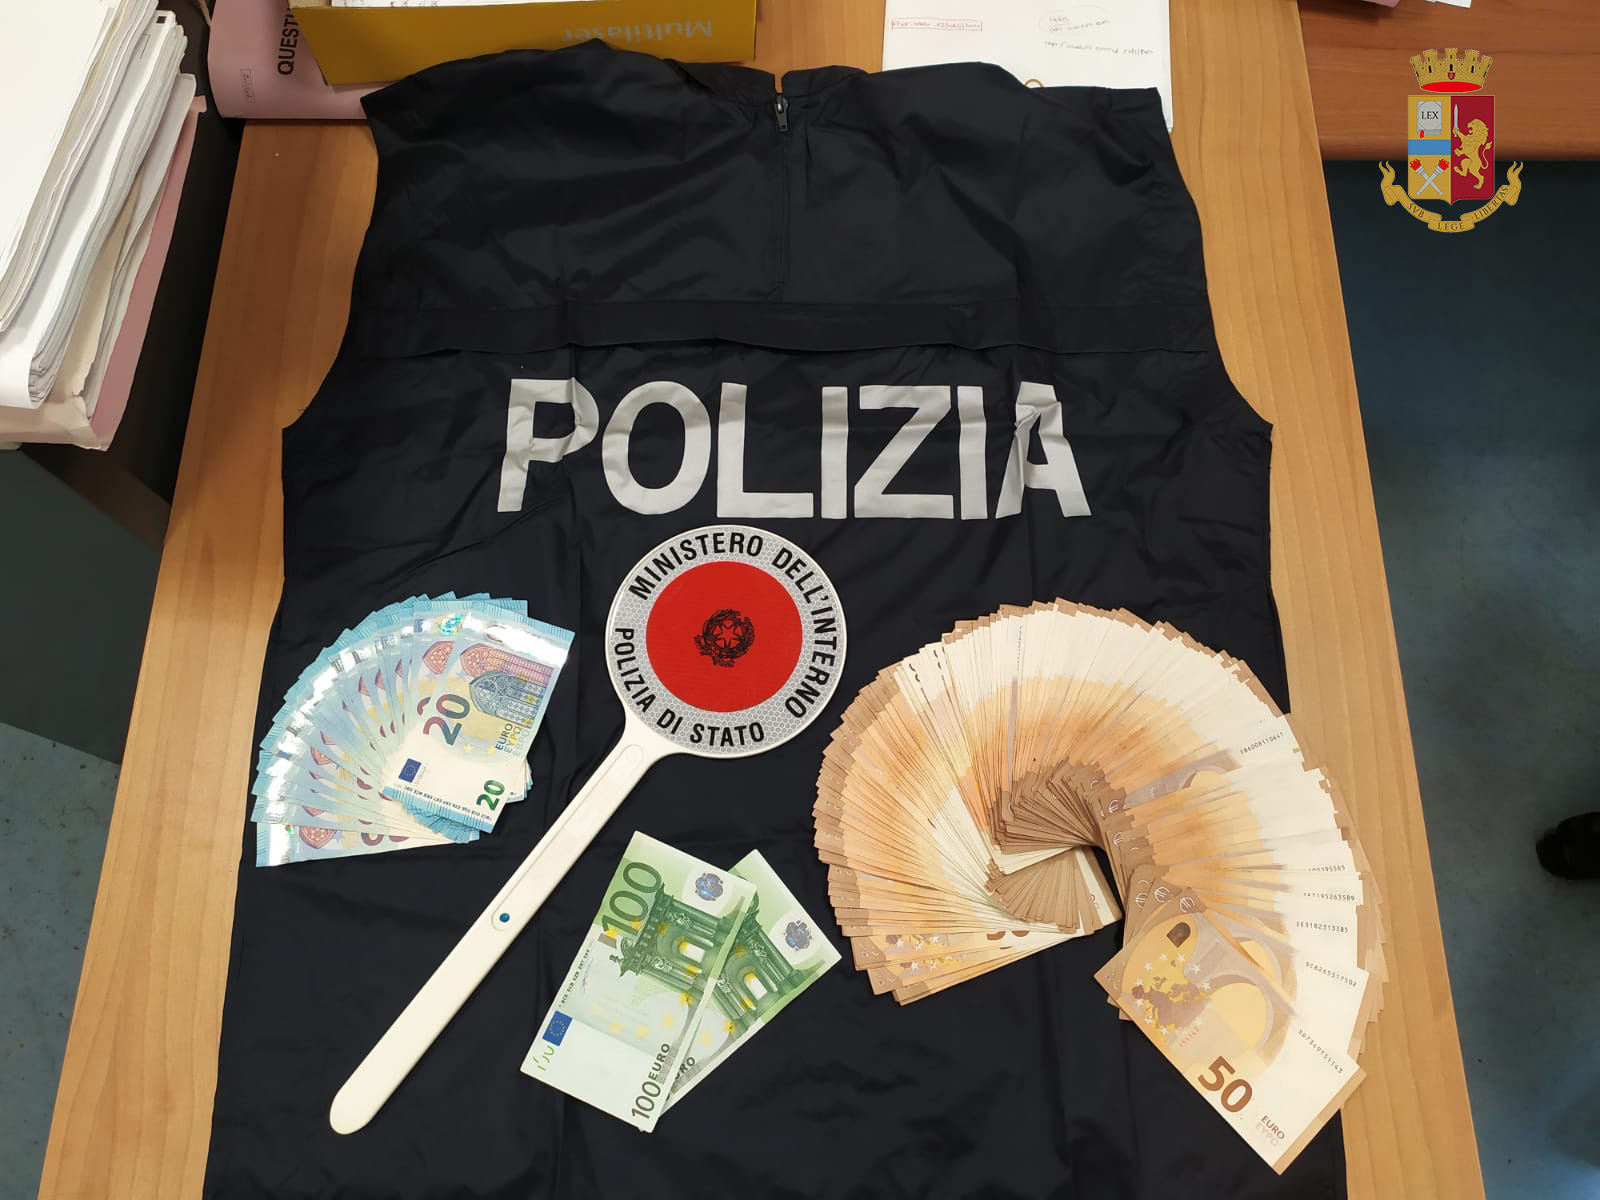 Traffico internazionale di droga, sgominata banda italo albanese: c'era scappato anche il morto - VIDEO